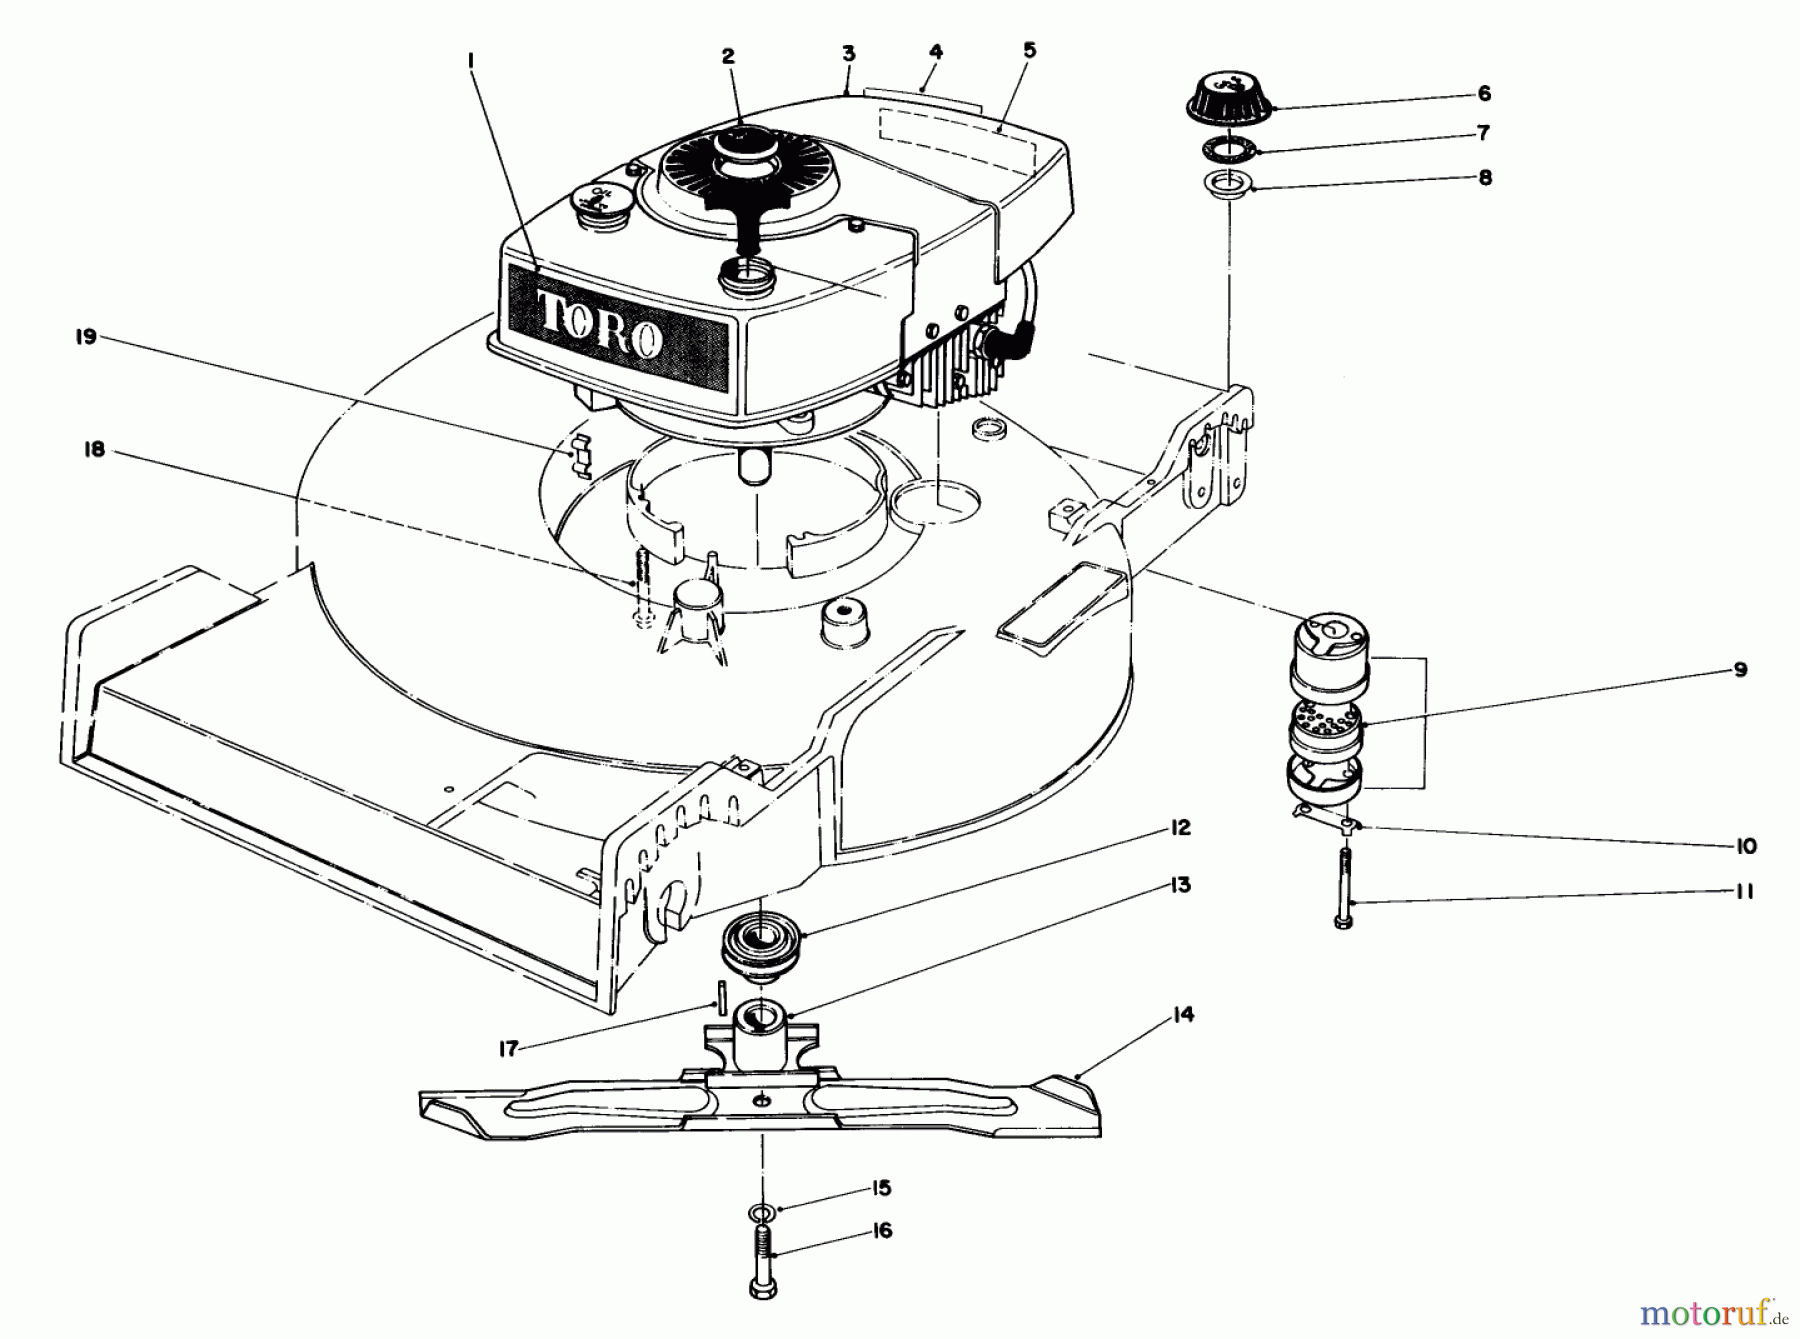  Toro Neu Mowers, Walk-Behind Seite 1 20770 - Toro Lawnmower, 1982 (2000001-2999999) ENGINE ASSEMBLY